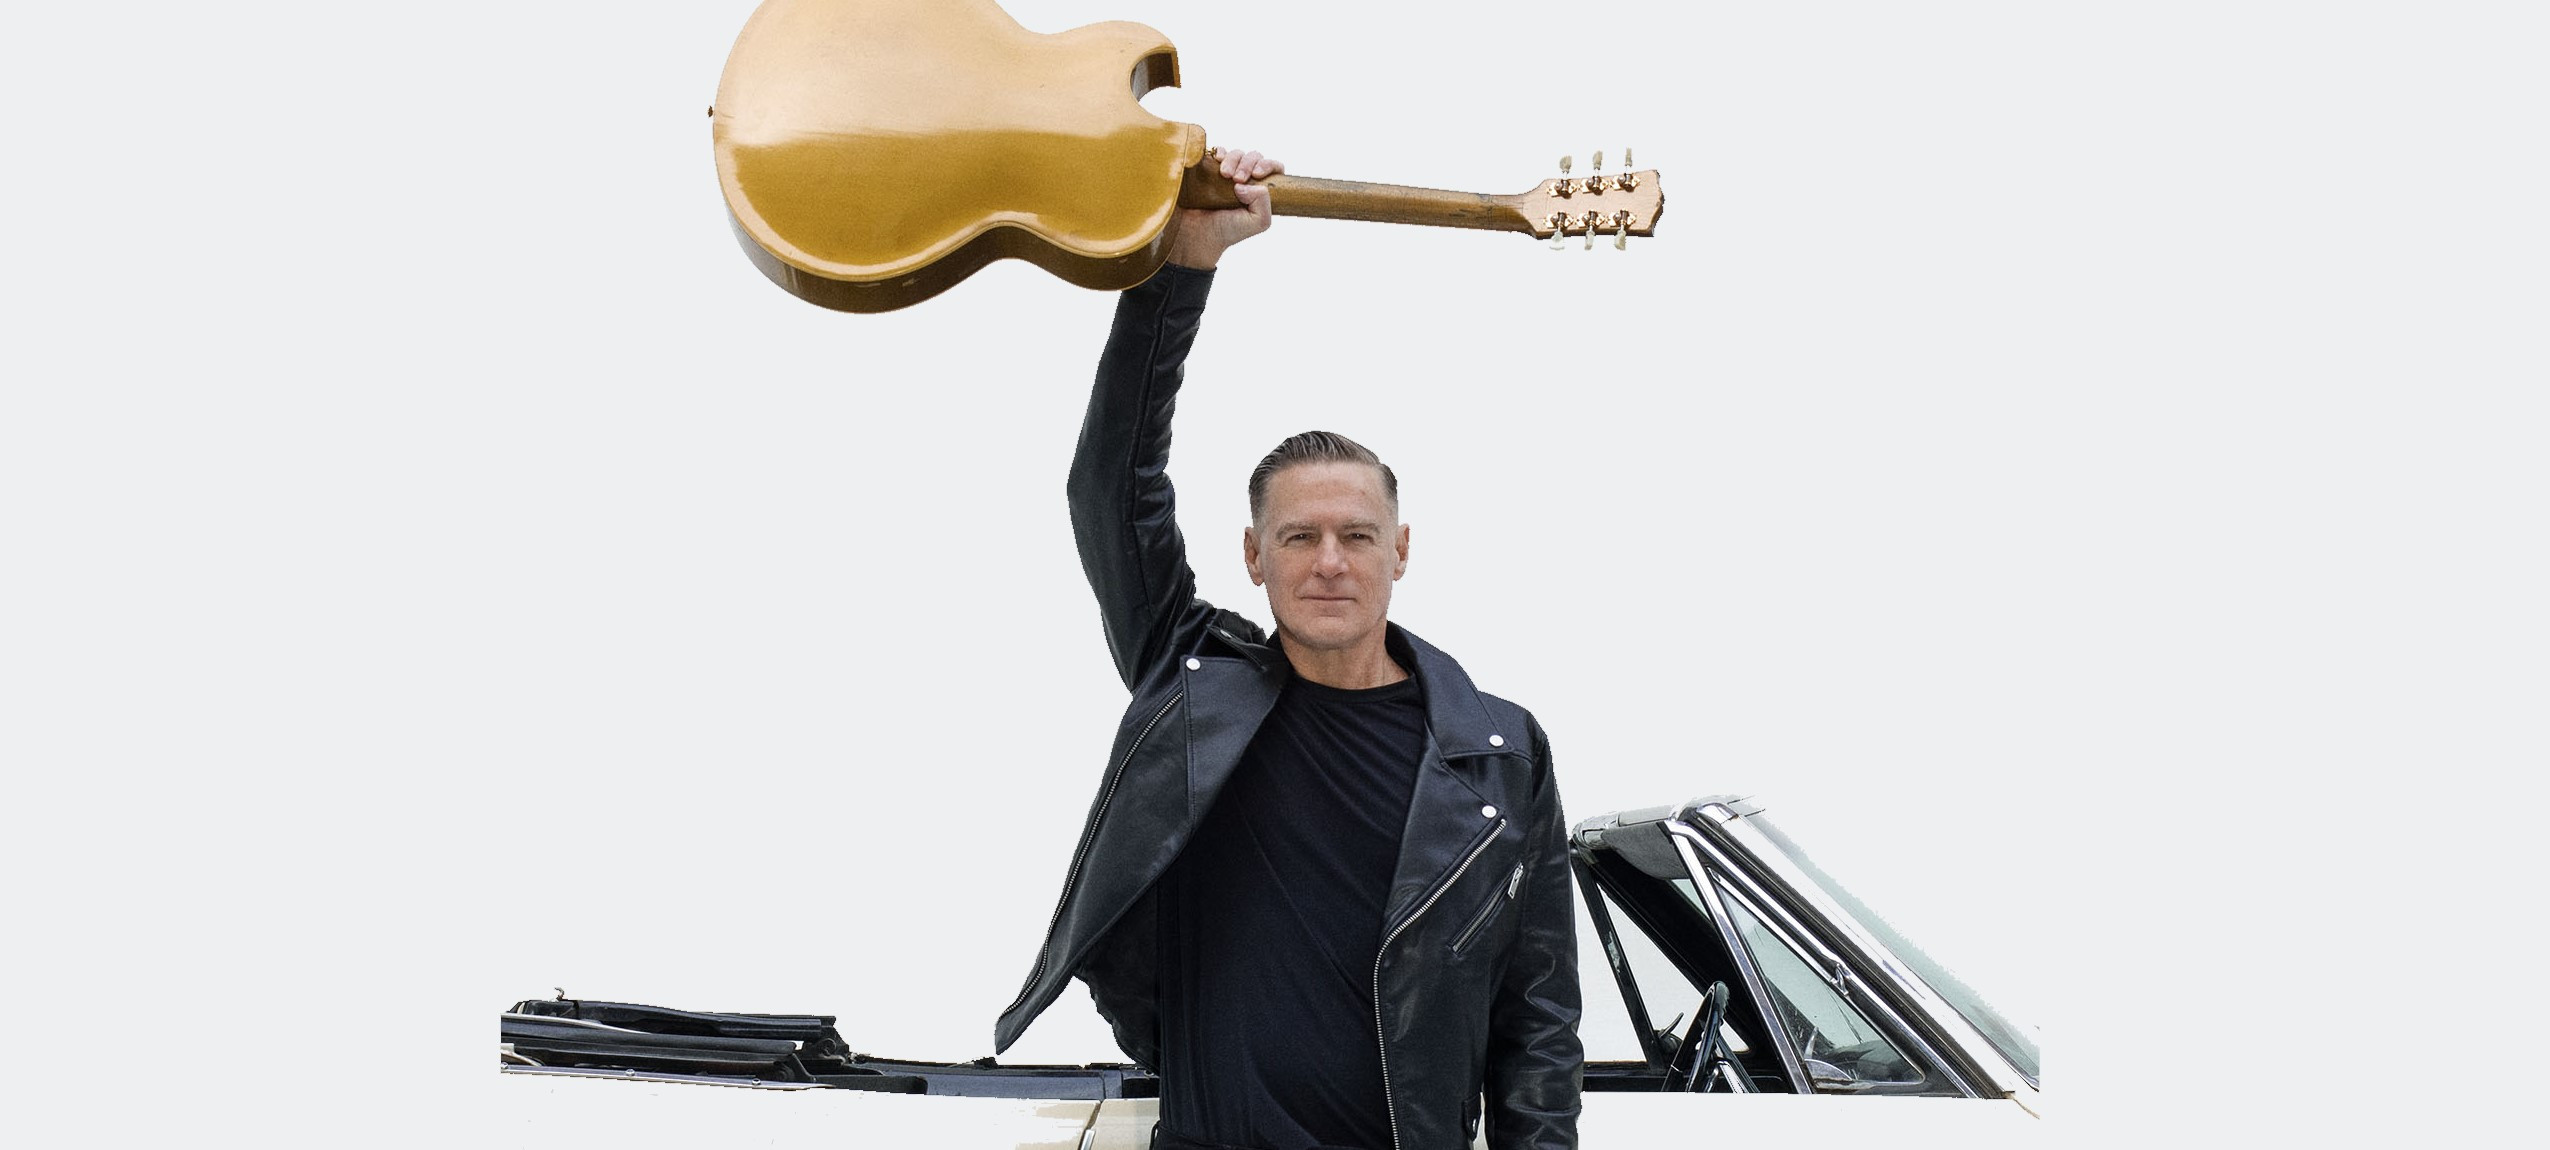 Schwarz gekleideter Mann hält beige Gitarre in die Luft. Im Hintergrund ein weißes Auto.